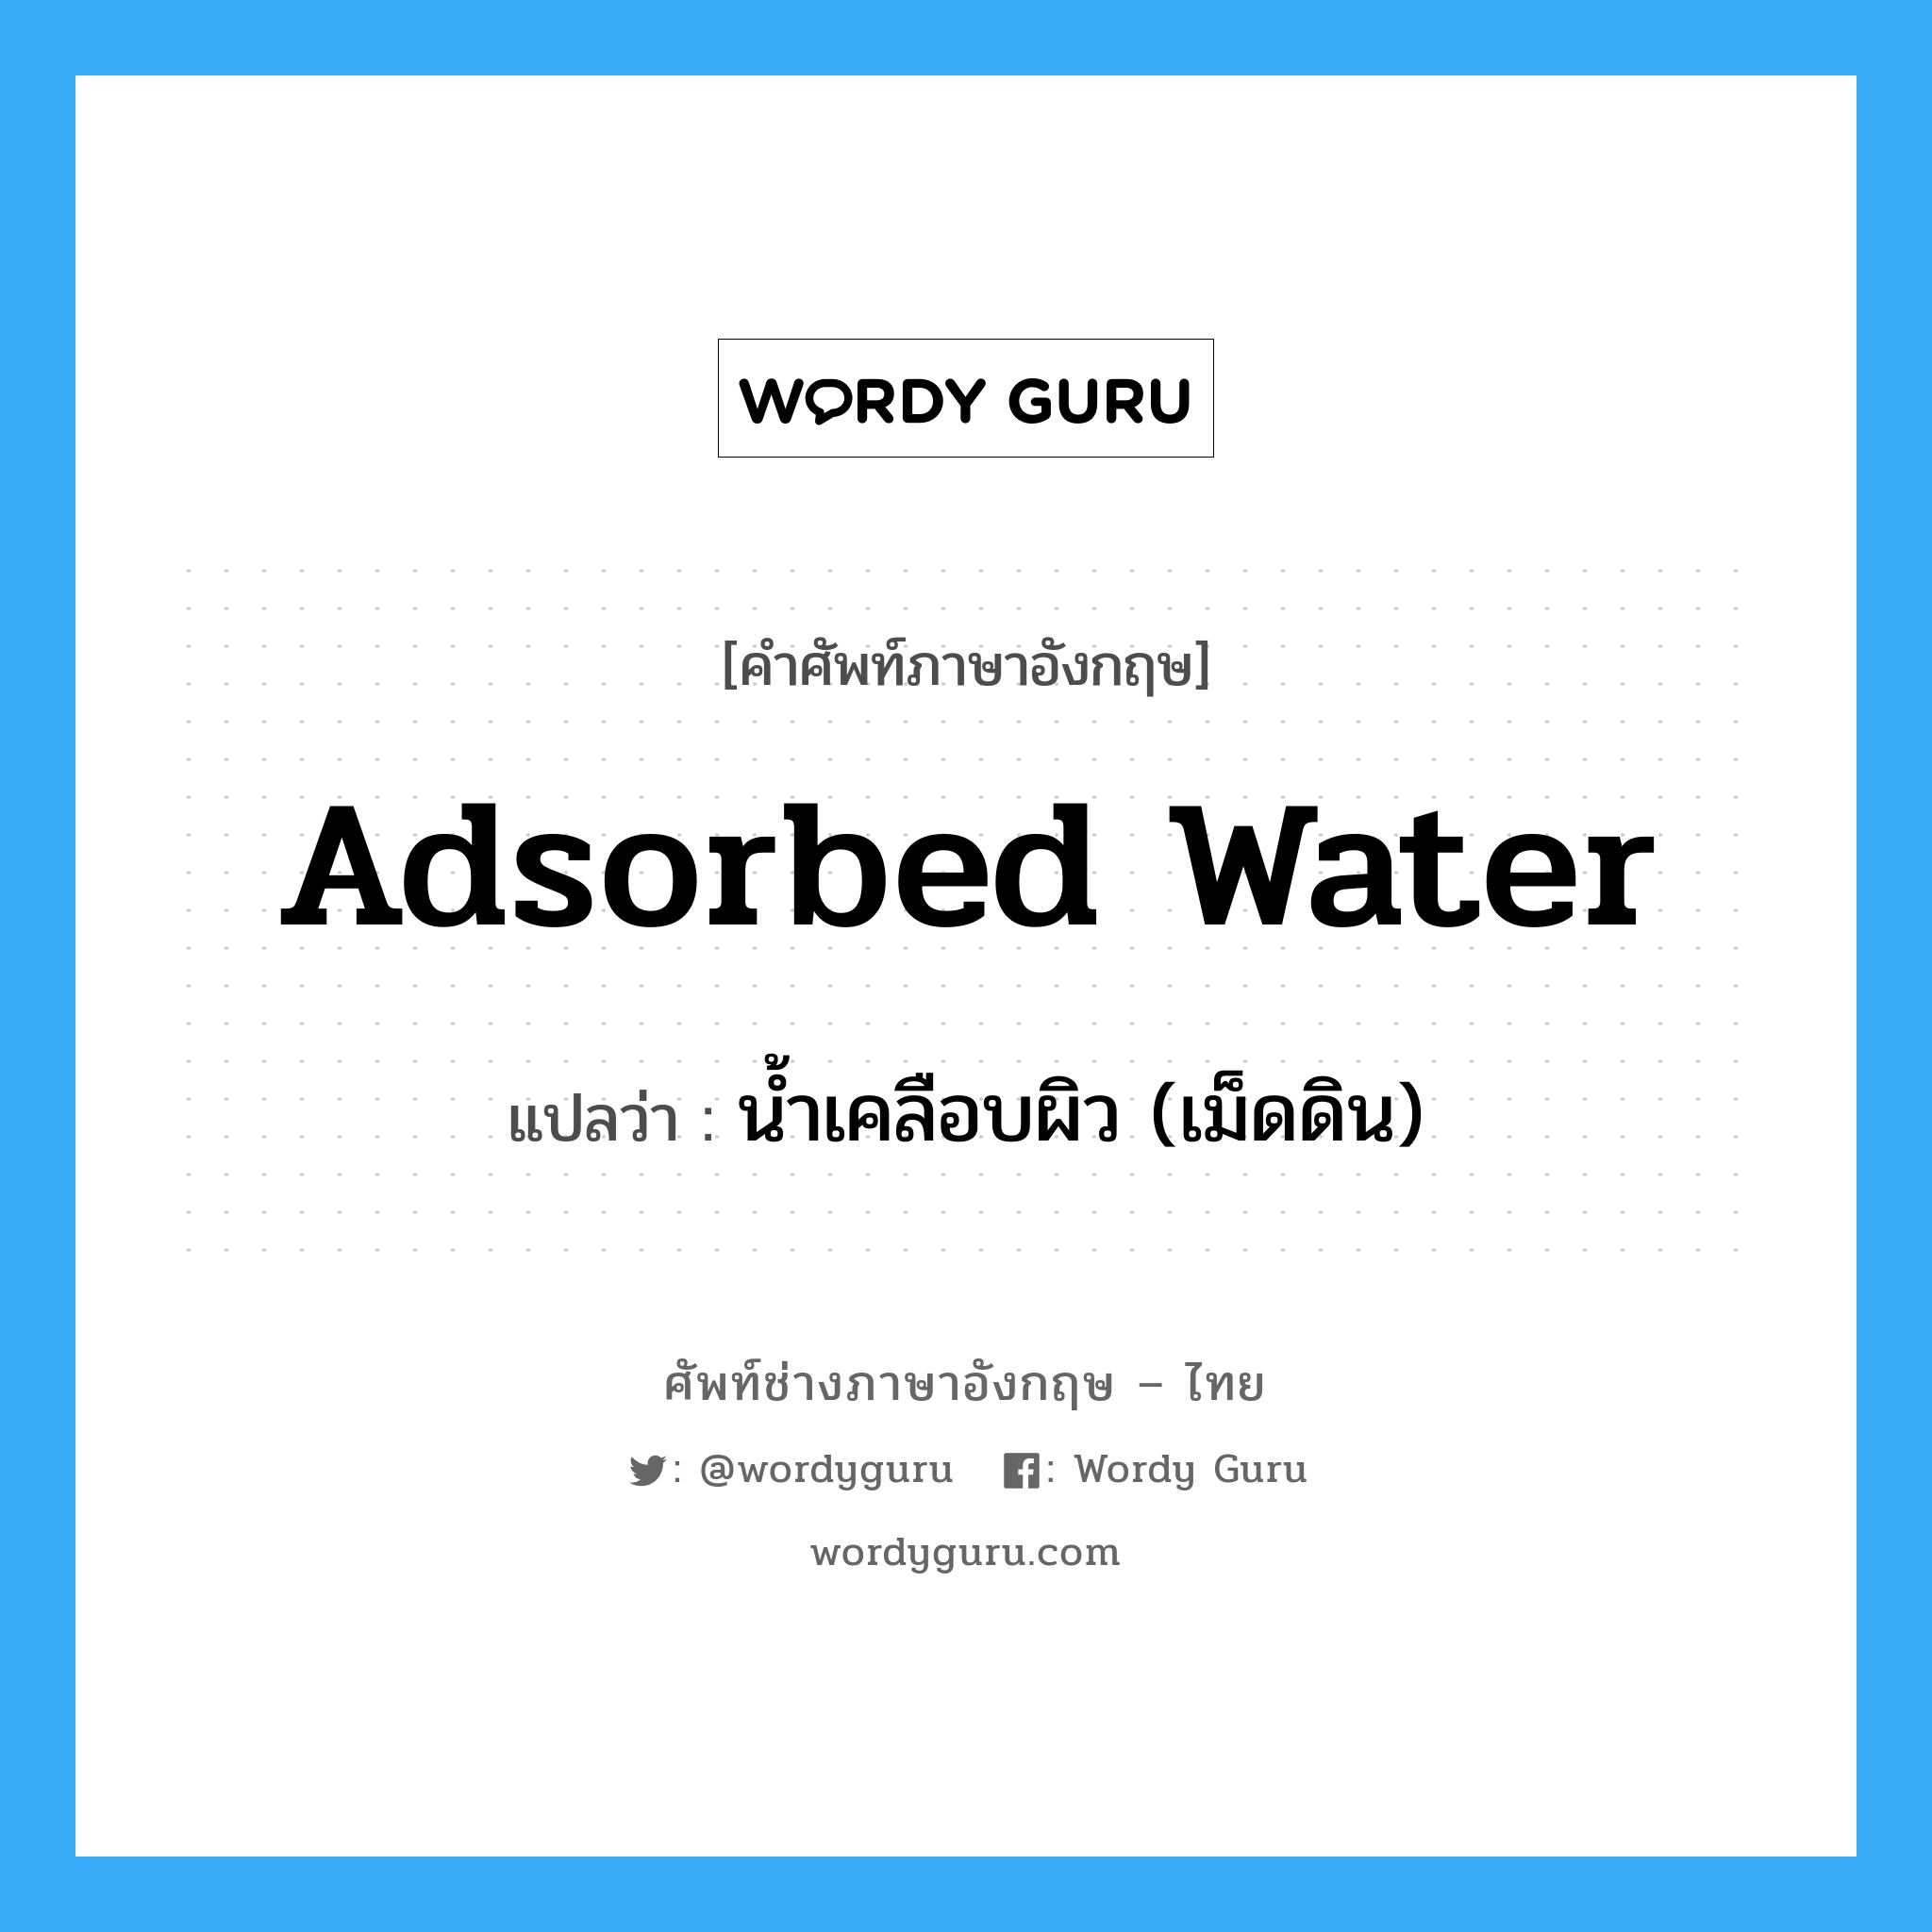 adsorbed water แปลว่า?, คำศัพท์ช่างภาษาอังกฤษ - ไทย adsorbed water คำศัพท์ภาษาอังกฤษ adsorbed water แปลว่า น้ำเคลือบผิว (เม็ดดิน)